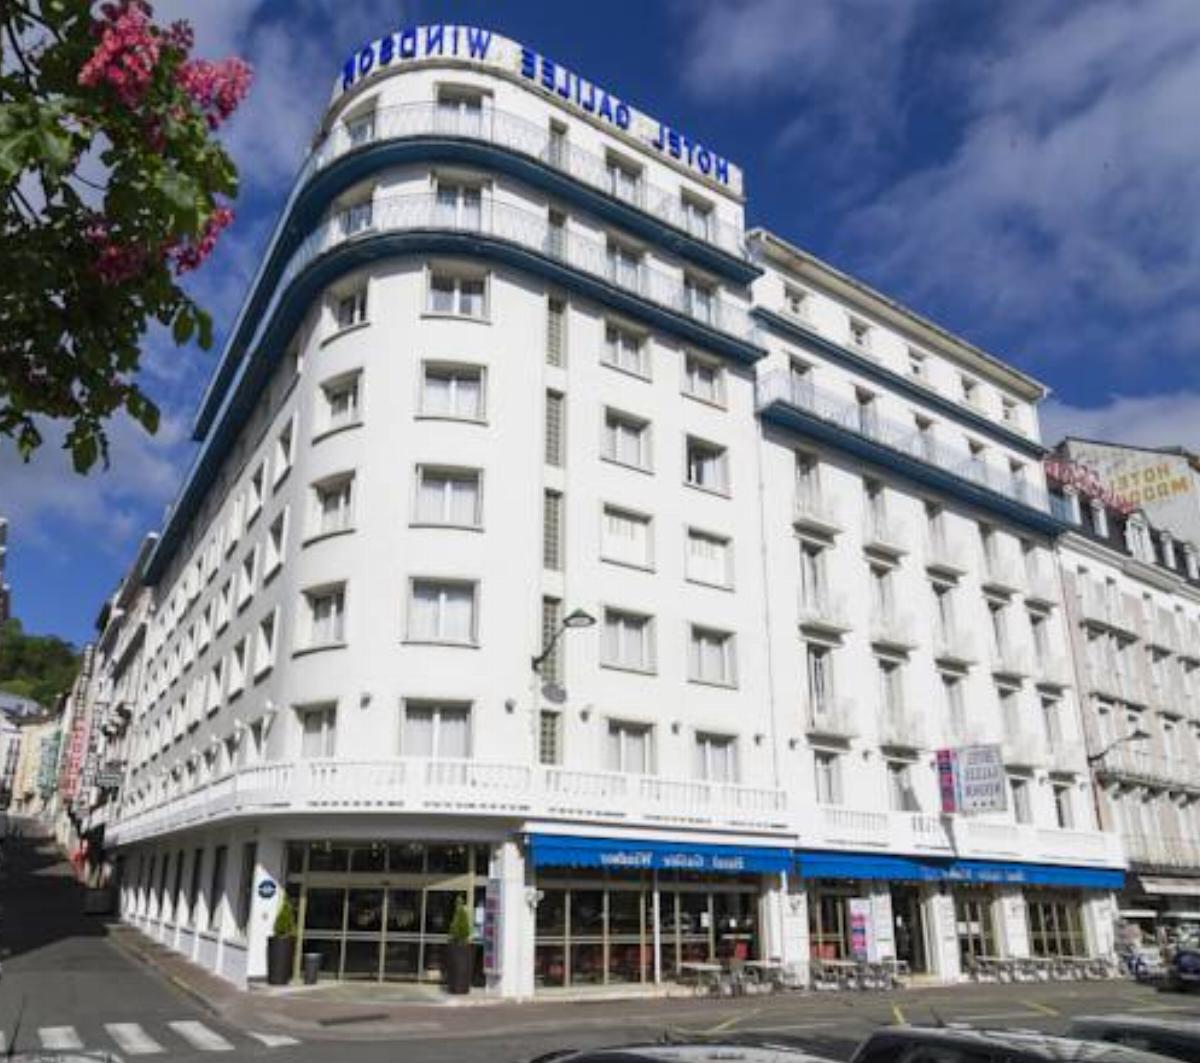 Hôtel Galilée Windsor Hotel Lourdes France